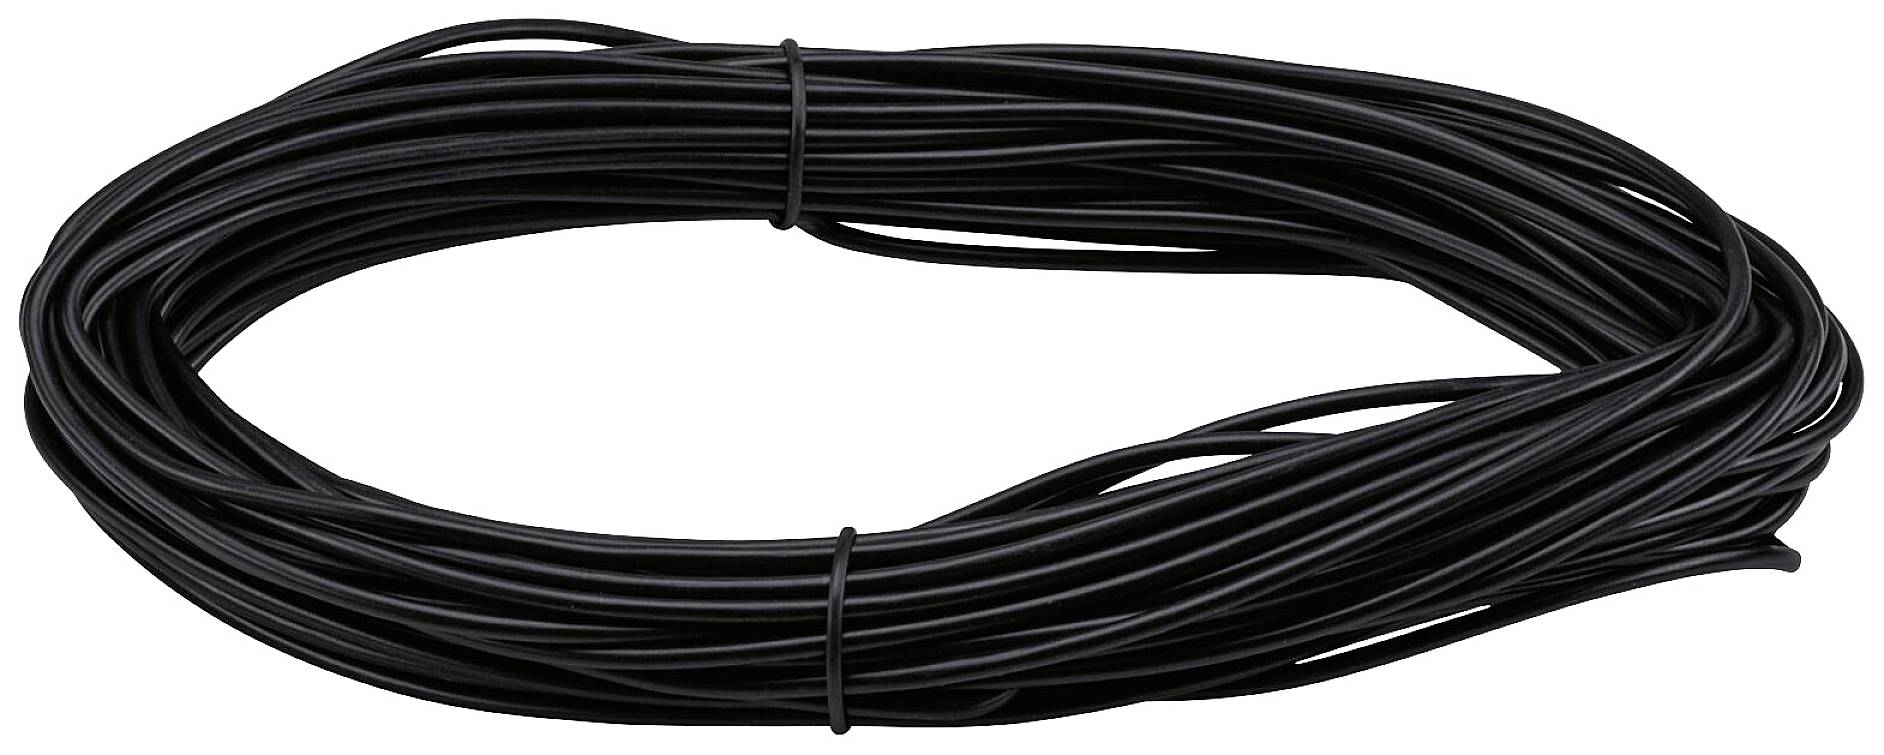 Paulmann Wire Corduo Spannseil 20m Sz 2,5qmm iso 94593 nízkonapěť. komponent lankových systémů černá